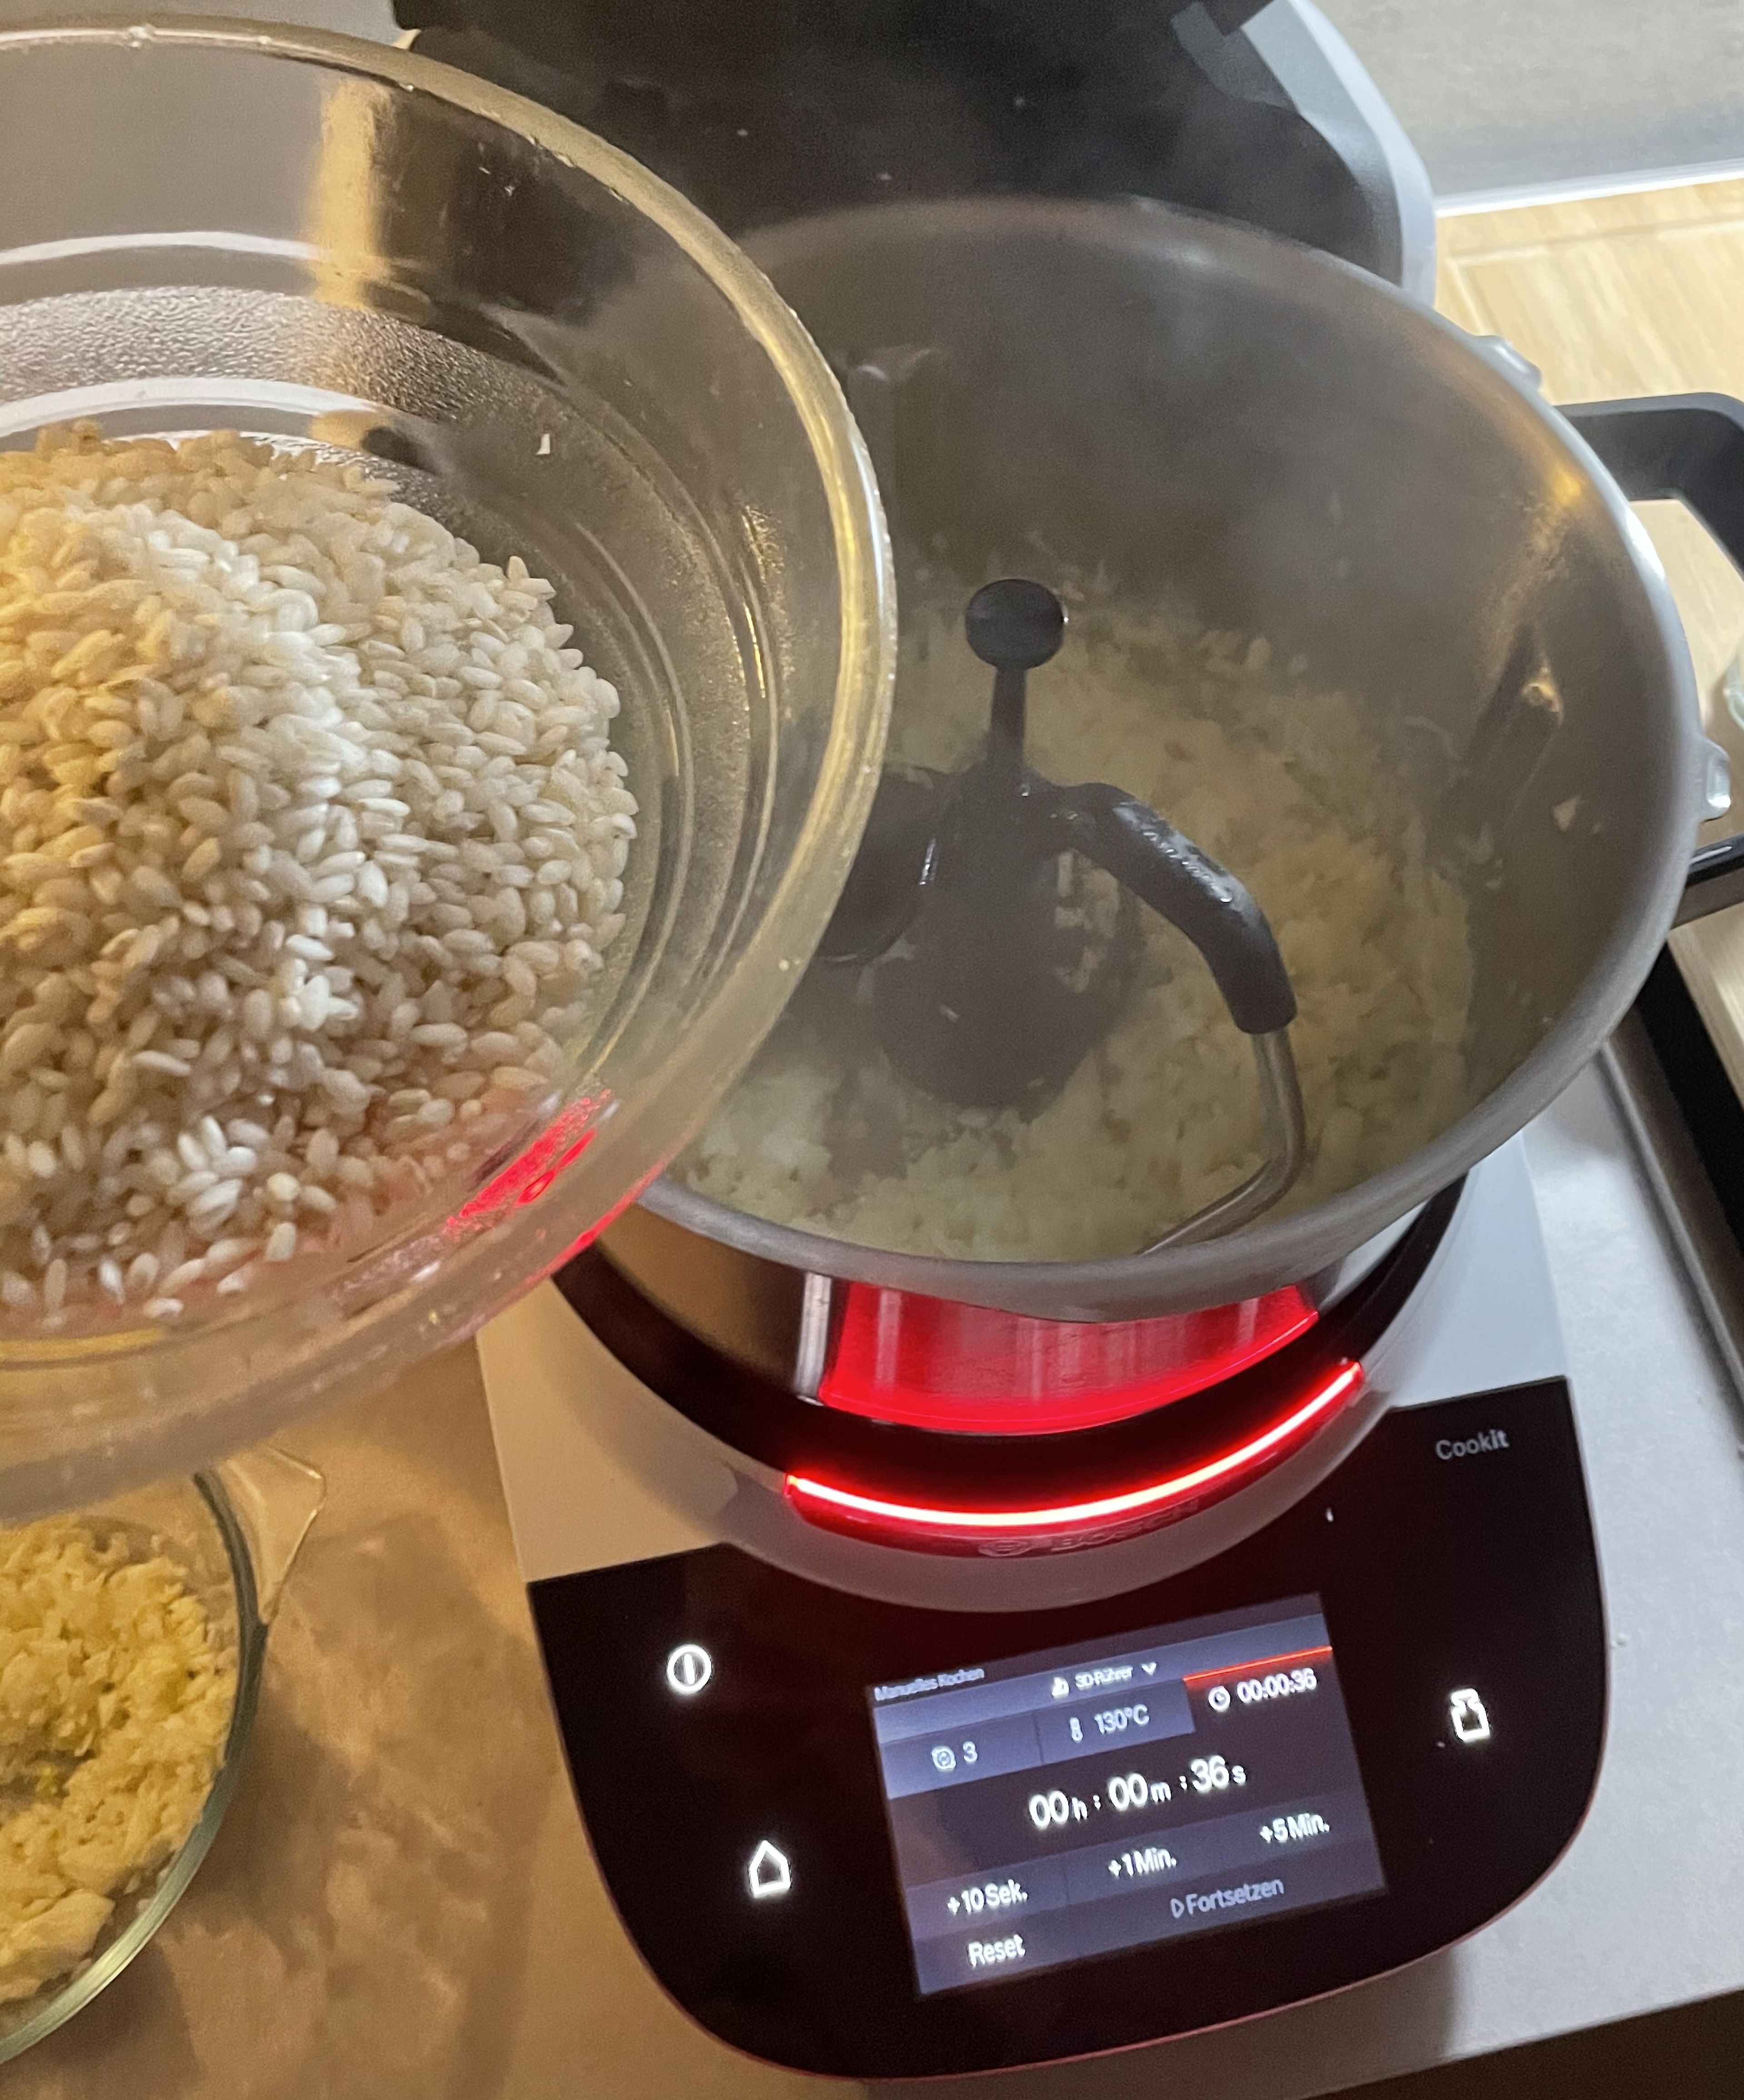 Die Zwiebel im Cookit bei geschlossenem Deckel und eingesetztem Messbecher fein hacken (Universalmesser | Stufe 14 | 15 Sek.) und mit dem Spatel vom Rand runterschieben. Das Universalmesser entfernen und den 3D-Rührer einsetzen. Dann 2 EL Öl und 2 EL Butter in den Cookit dazu geben und bei geschlossenem Deckel, ohne Messbecher, erhitzen (3D-Rührer | Stufe 3 | 120°C | 2 Min.). 2/3 des Fenchels in den Cookit geben und 1 Min. bei geschlossenem Deckel, ohne Messbecher, mitdünsten  (3D-Rührer | Stufe 3 | 120°C | 1 Min.). Danach den Risottoreis einwiegen, Deckel ohne Messbecher schließen und ca. 2 Min. braten, bis er schön mit dem Öl überzogen ist  (3D-Rührer | Stufe 3 | 120°C | 2 Min.).